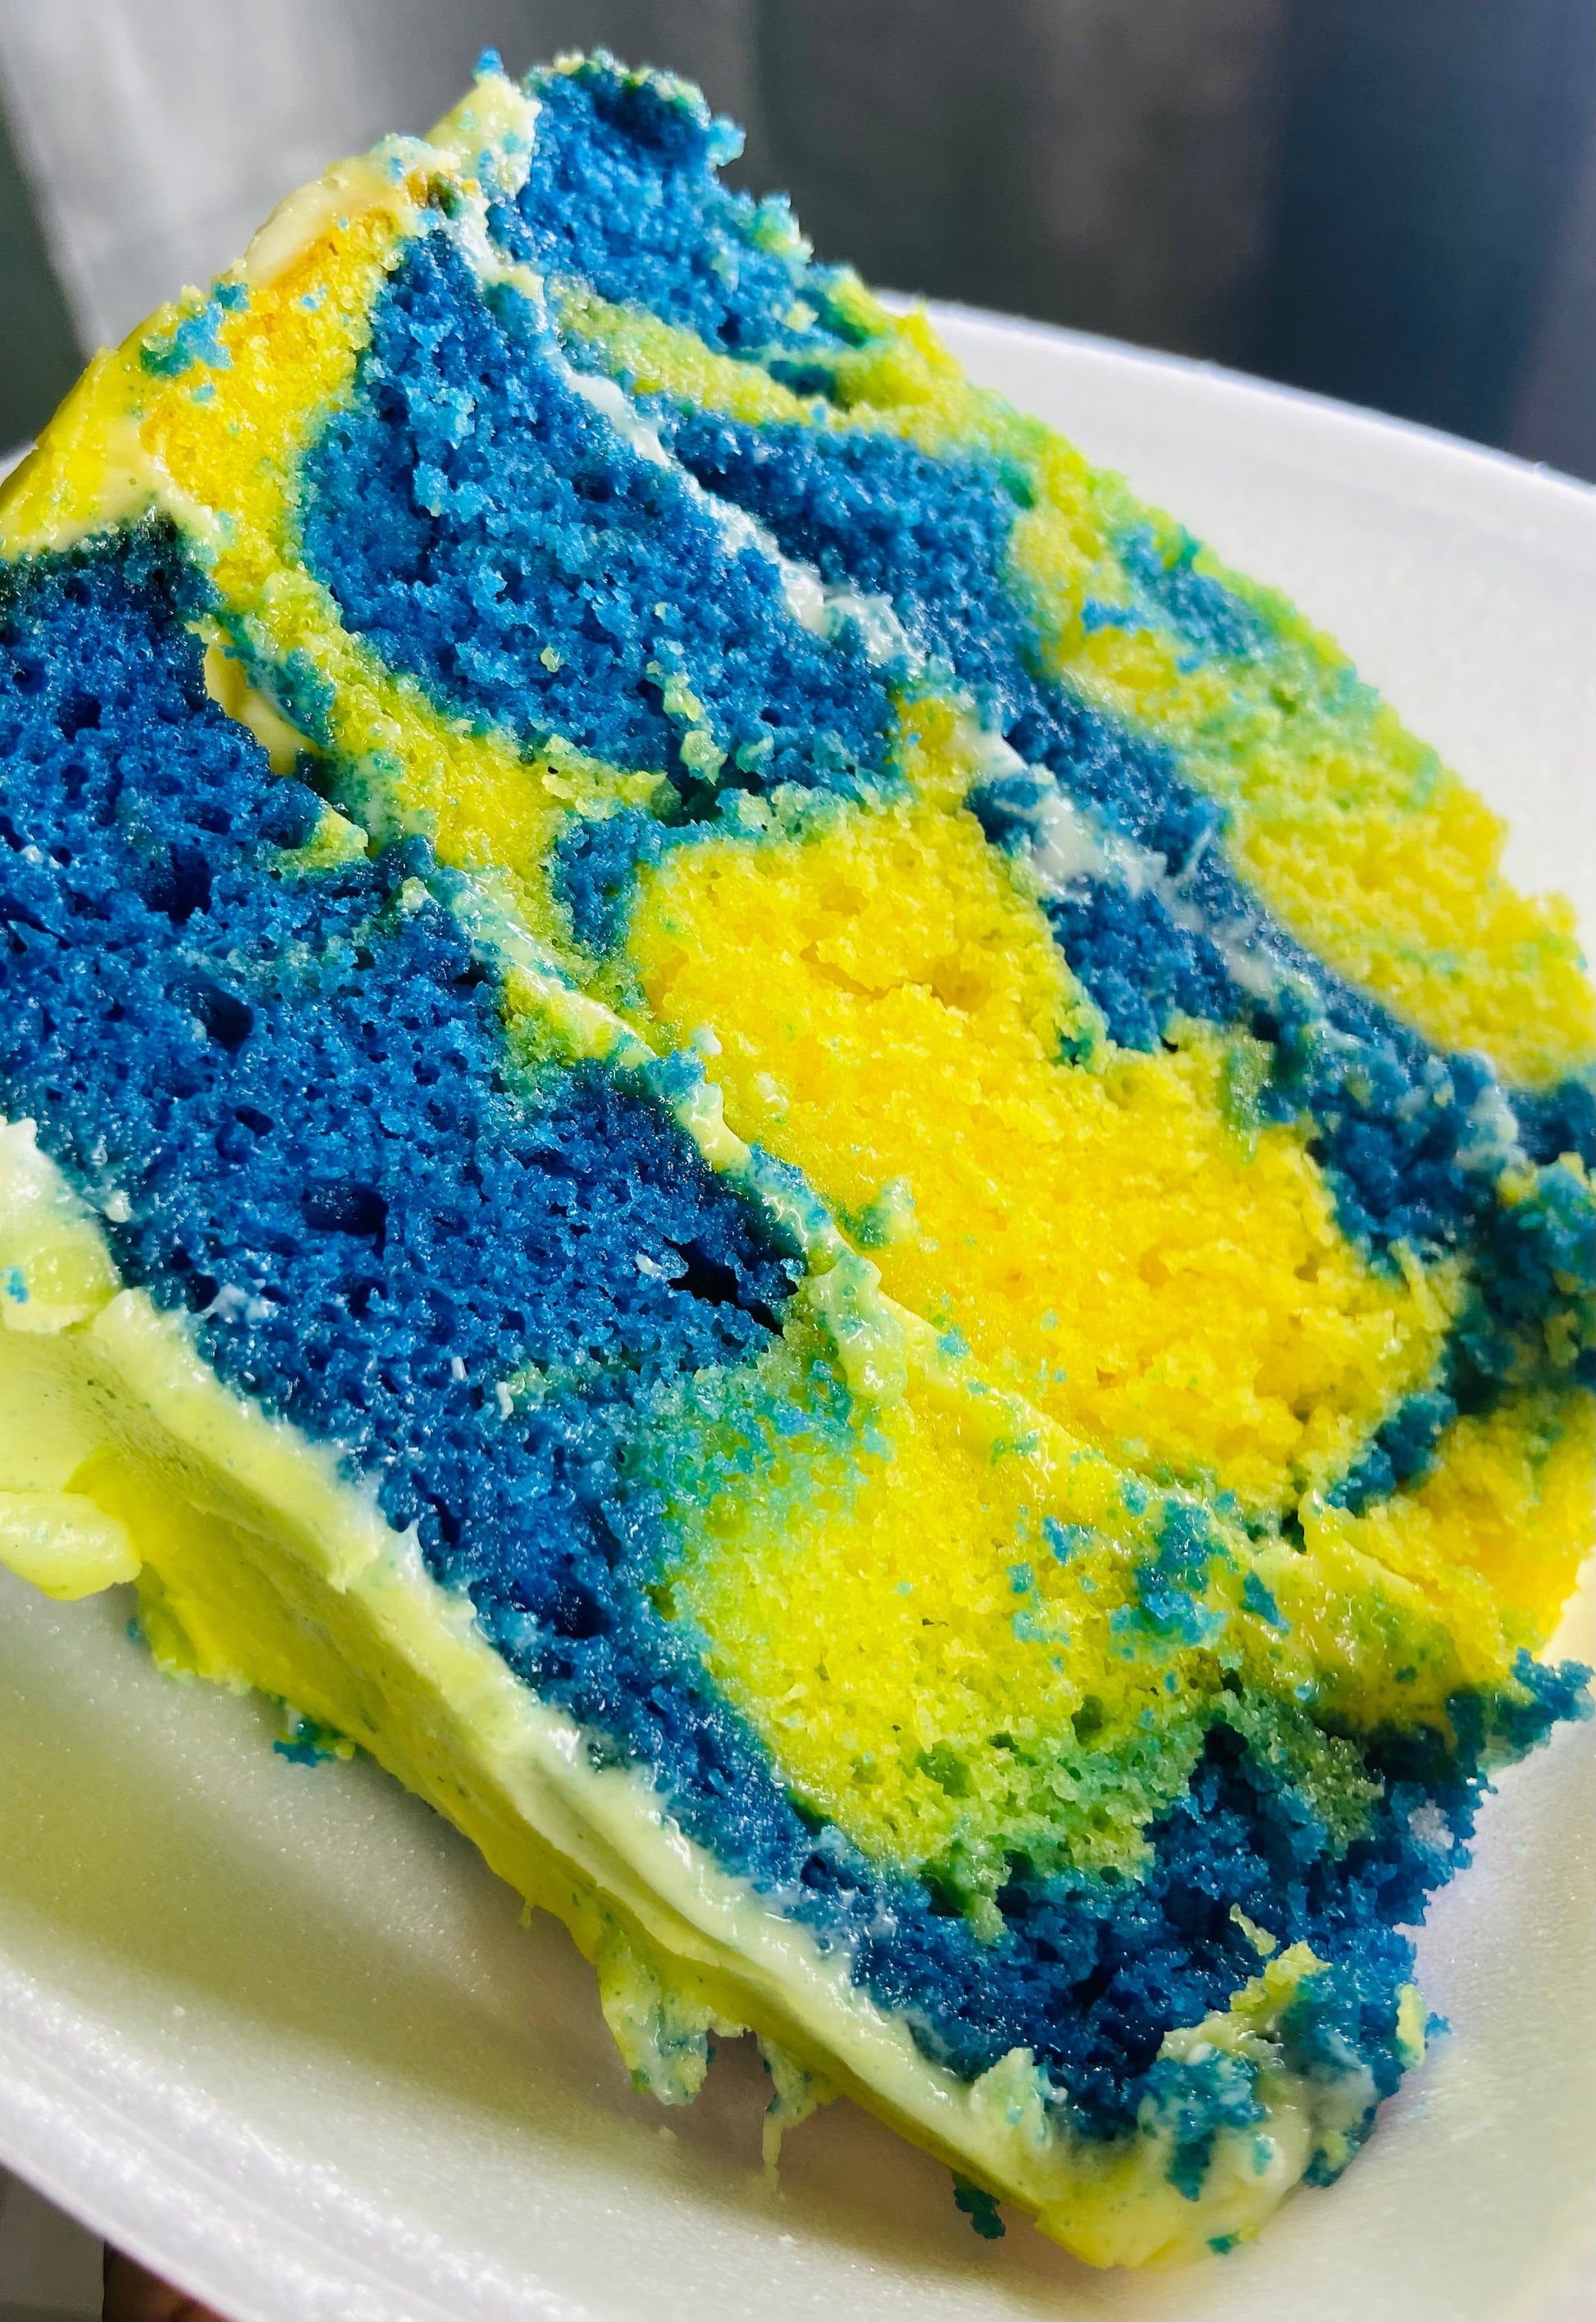 Blue Velvet Cake Recipe: How to Make It